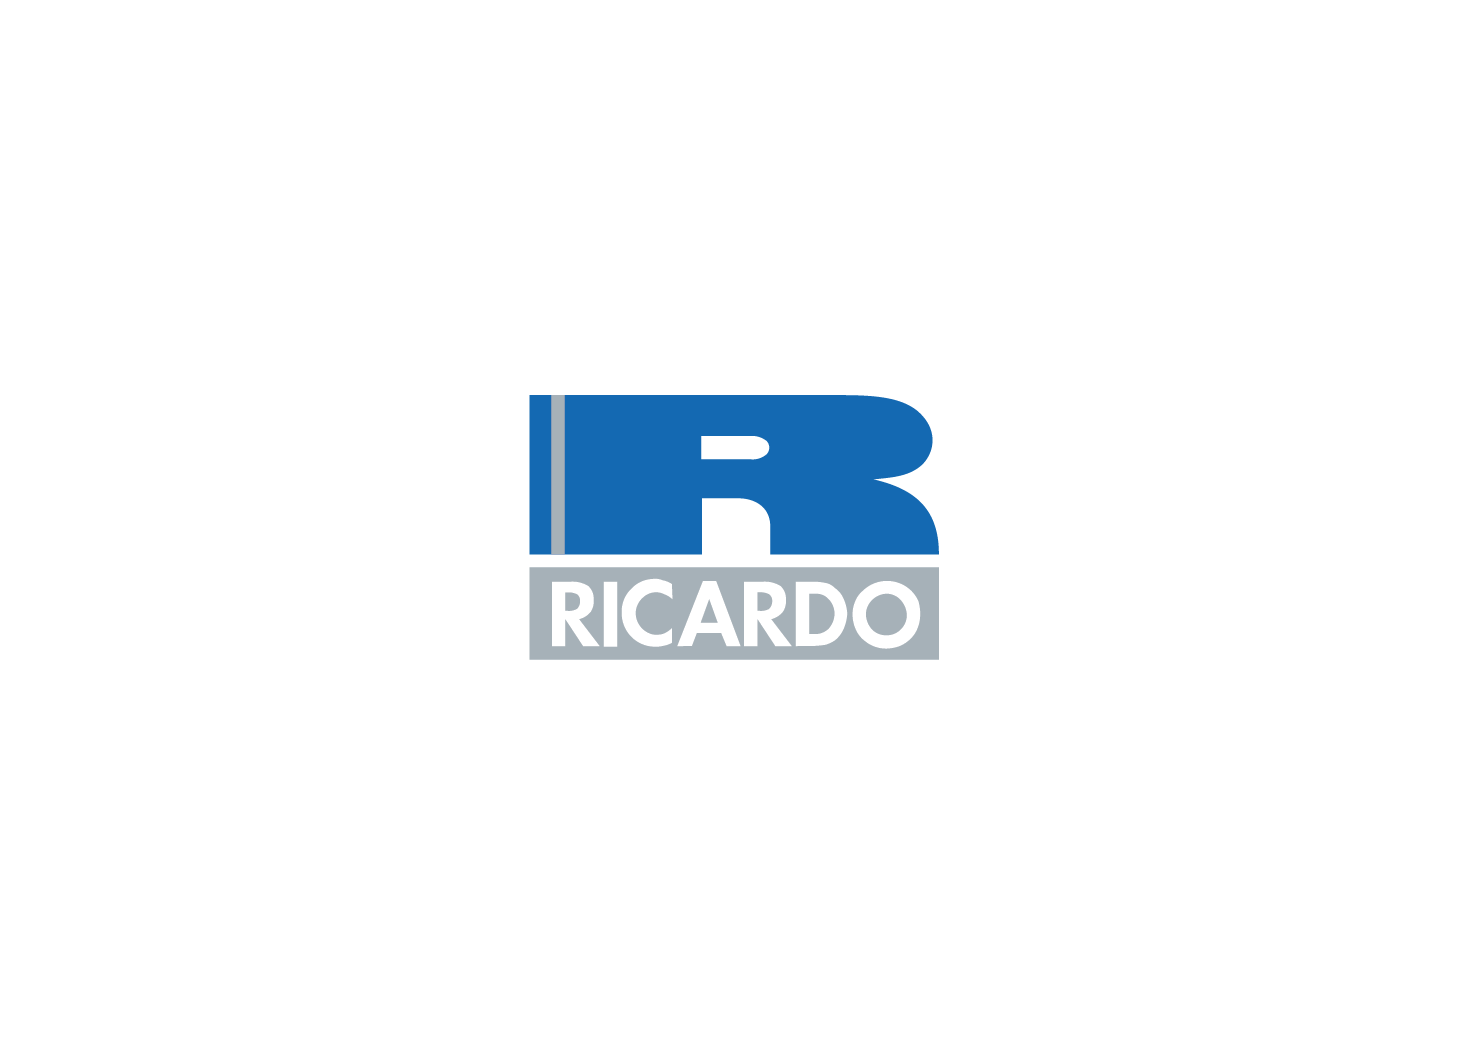 RICAARDO